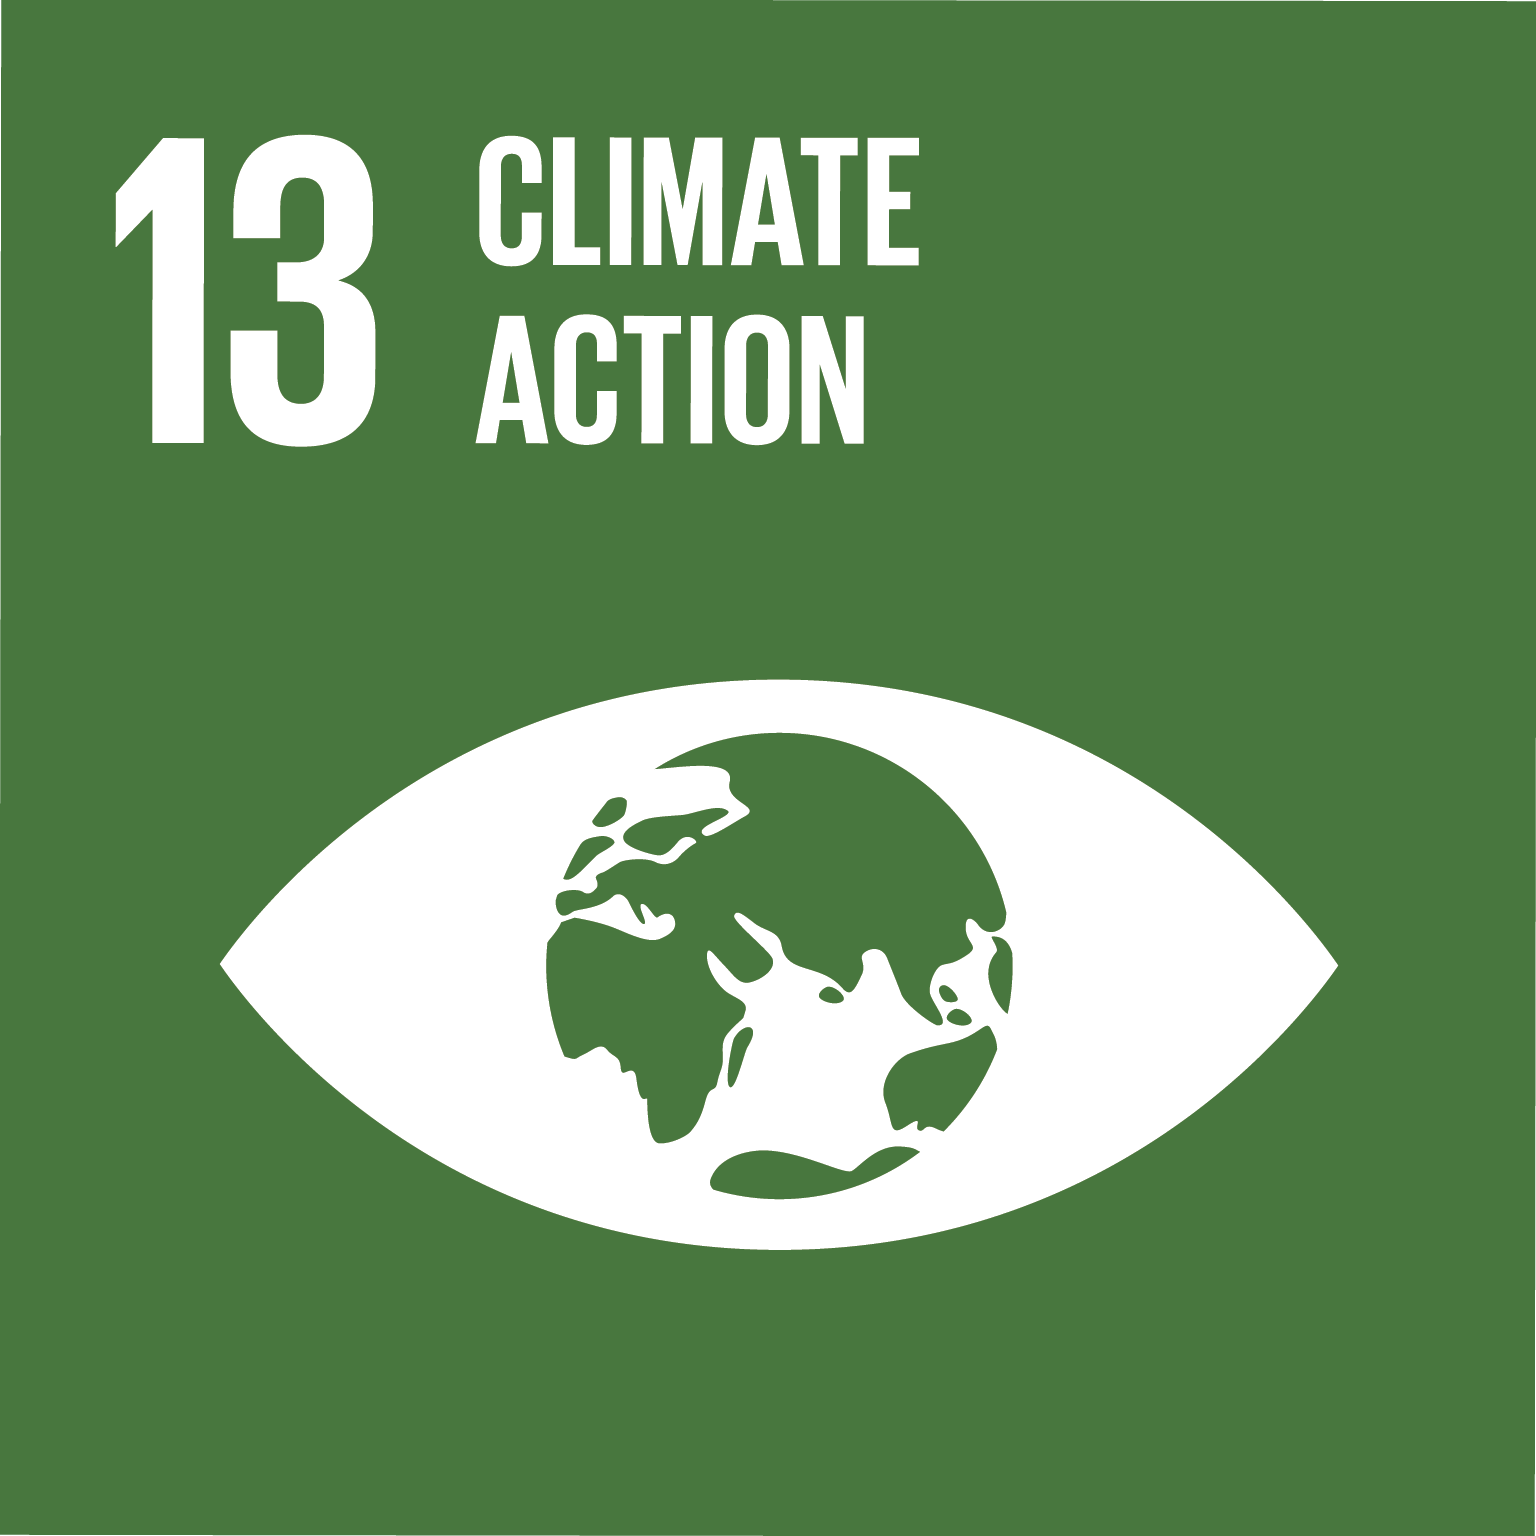 UN Sustainable Development Goals - 13 - Climate Action